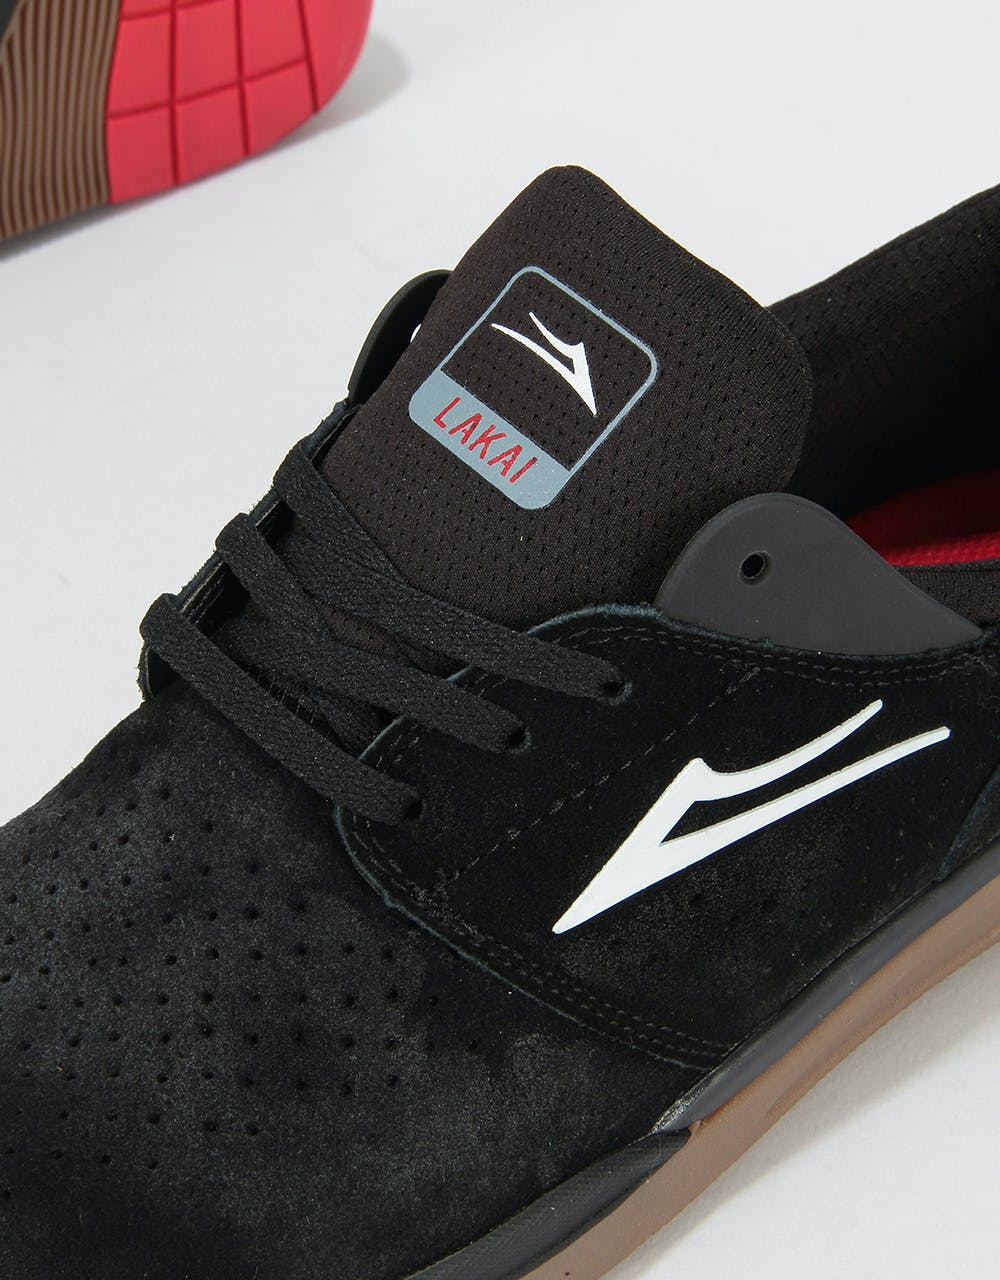 Lakai Fremont Skate Shoes - Black/Gum Suede